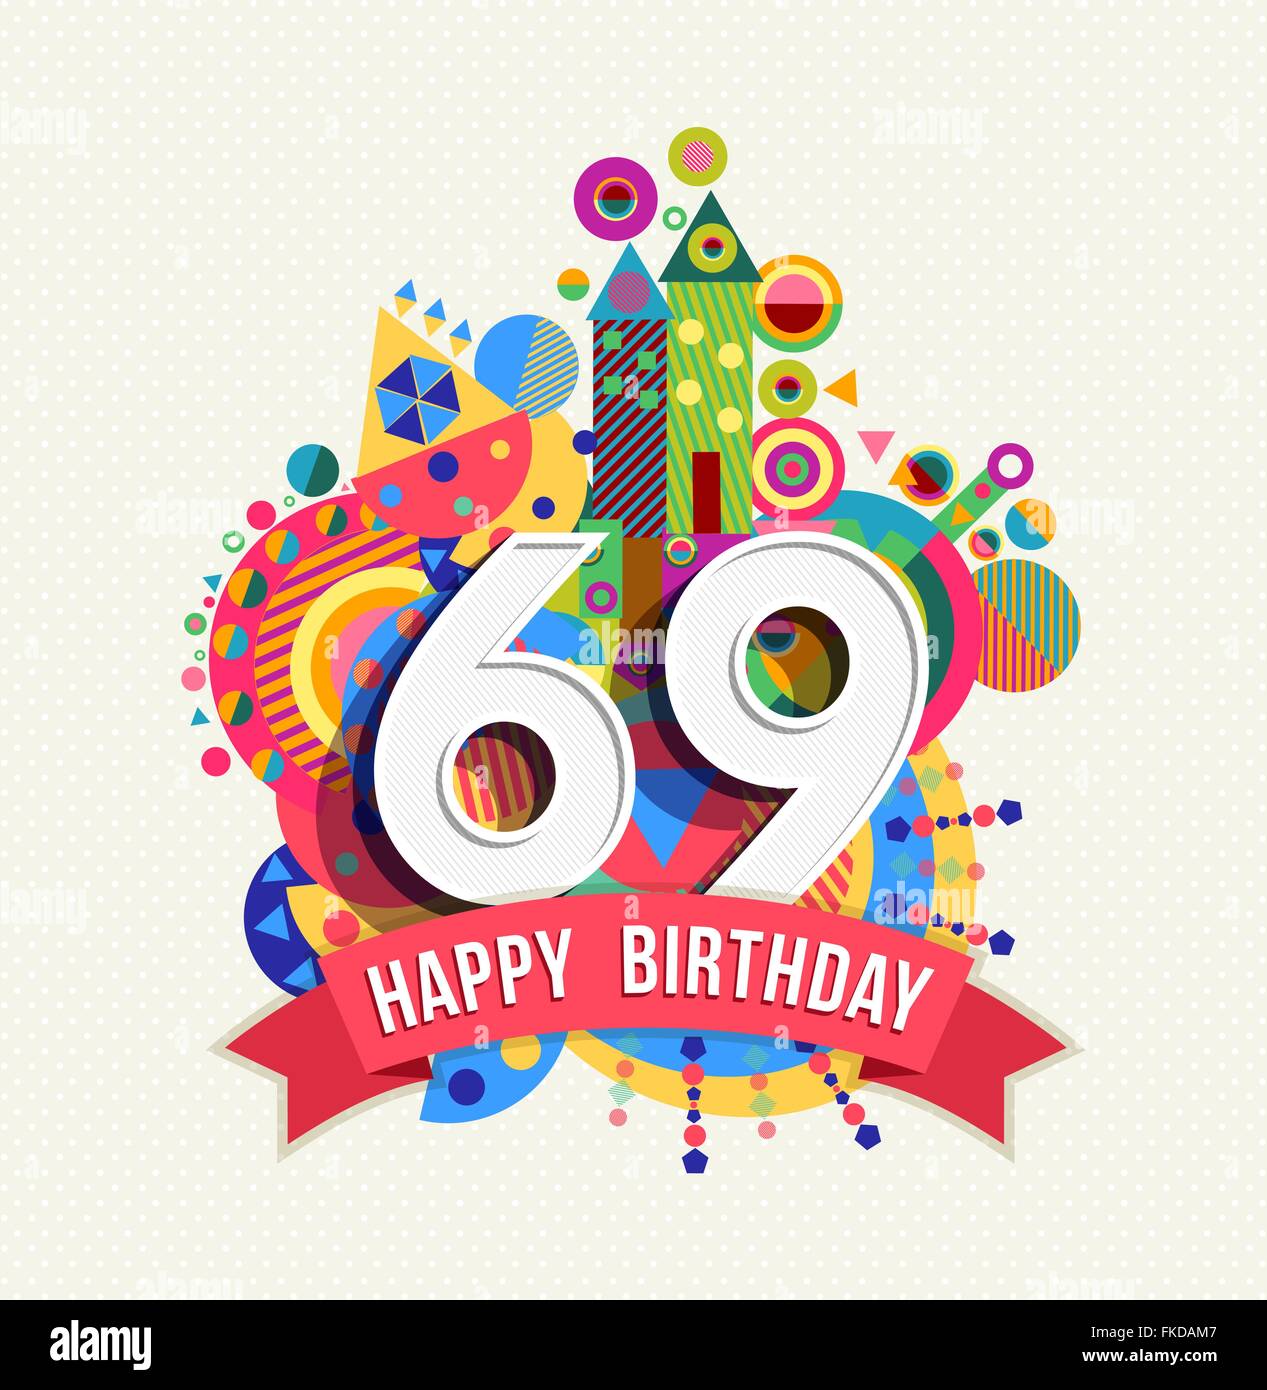 Joyeux anniversaire soixante neuf 69 ans, fun célébration anniversaire carte postale avec des étiquettes de texte, nombre et géométrie colorée Illustration de Vecteur